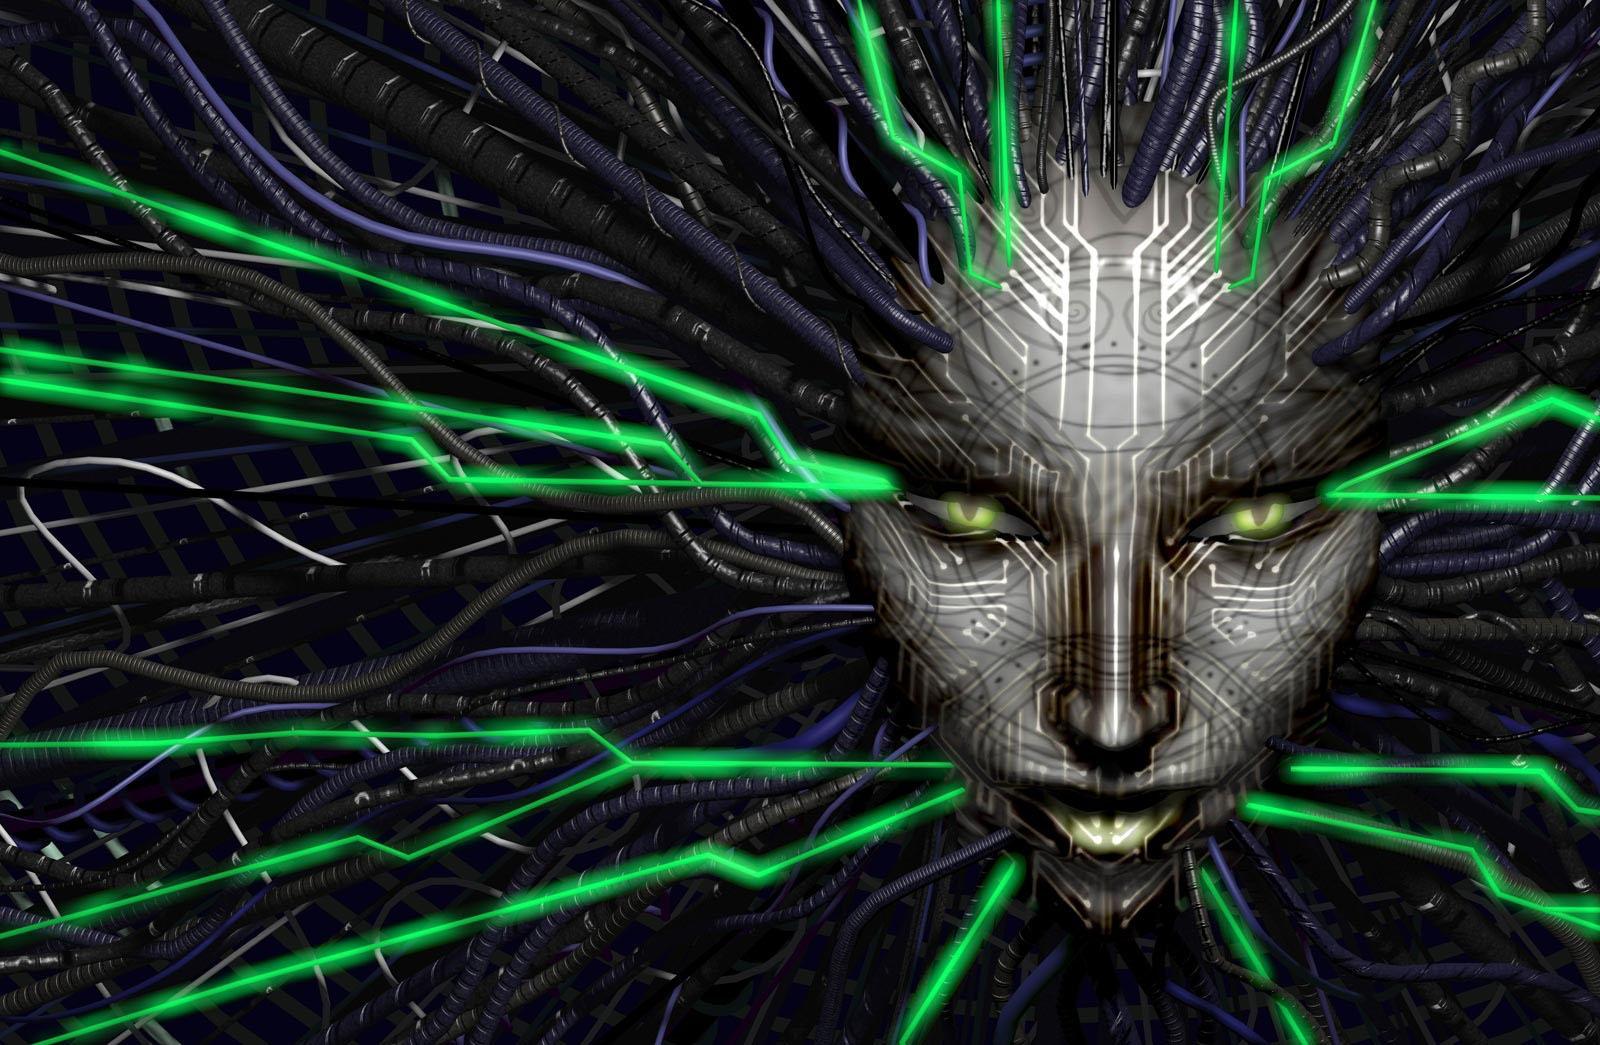 Ken Levine "deseja o melhor" para os desenvolvedores de System Shock 3